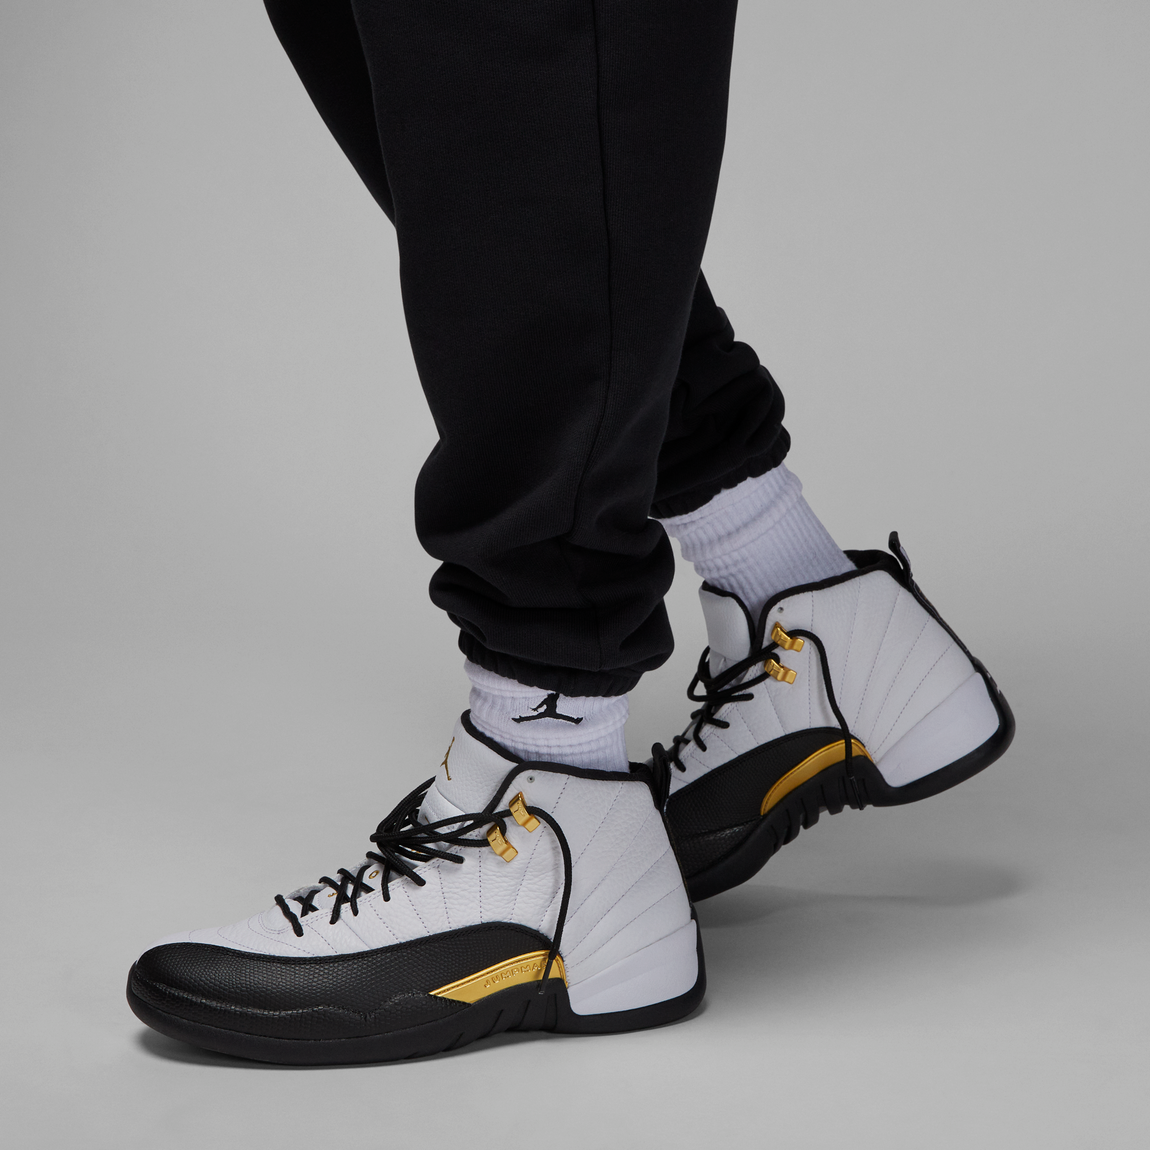 Air Jordan Wordmark Joggers (Black) - Air Jordan Wordmark Joggers (Black) - 